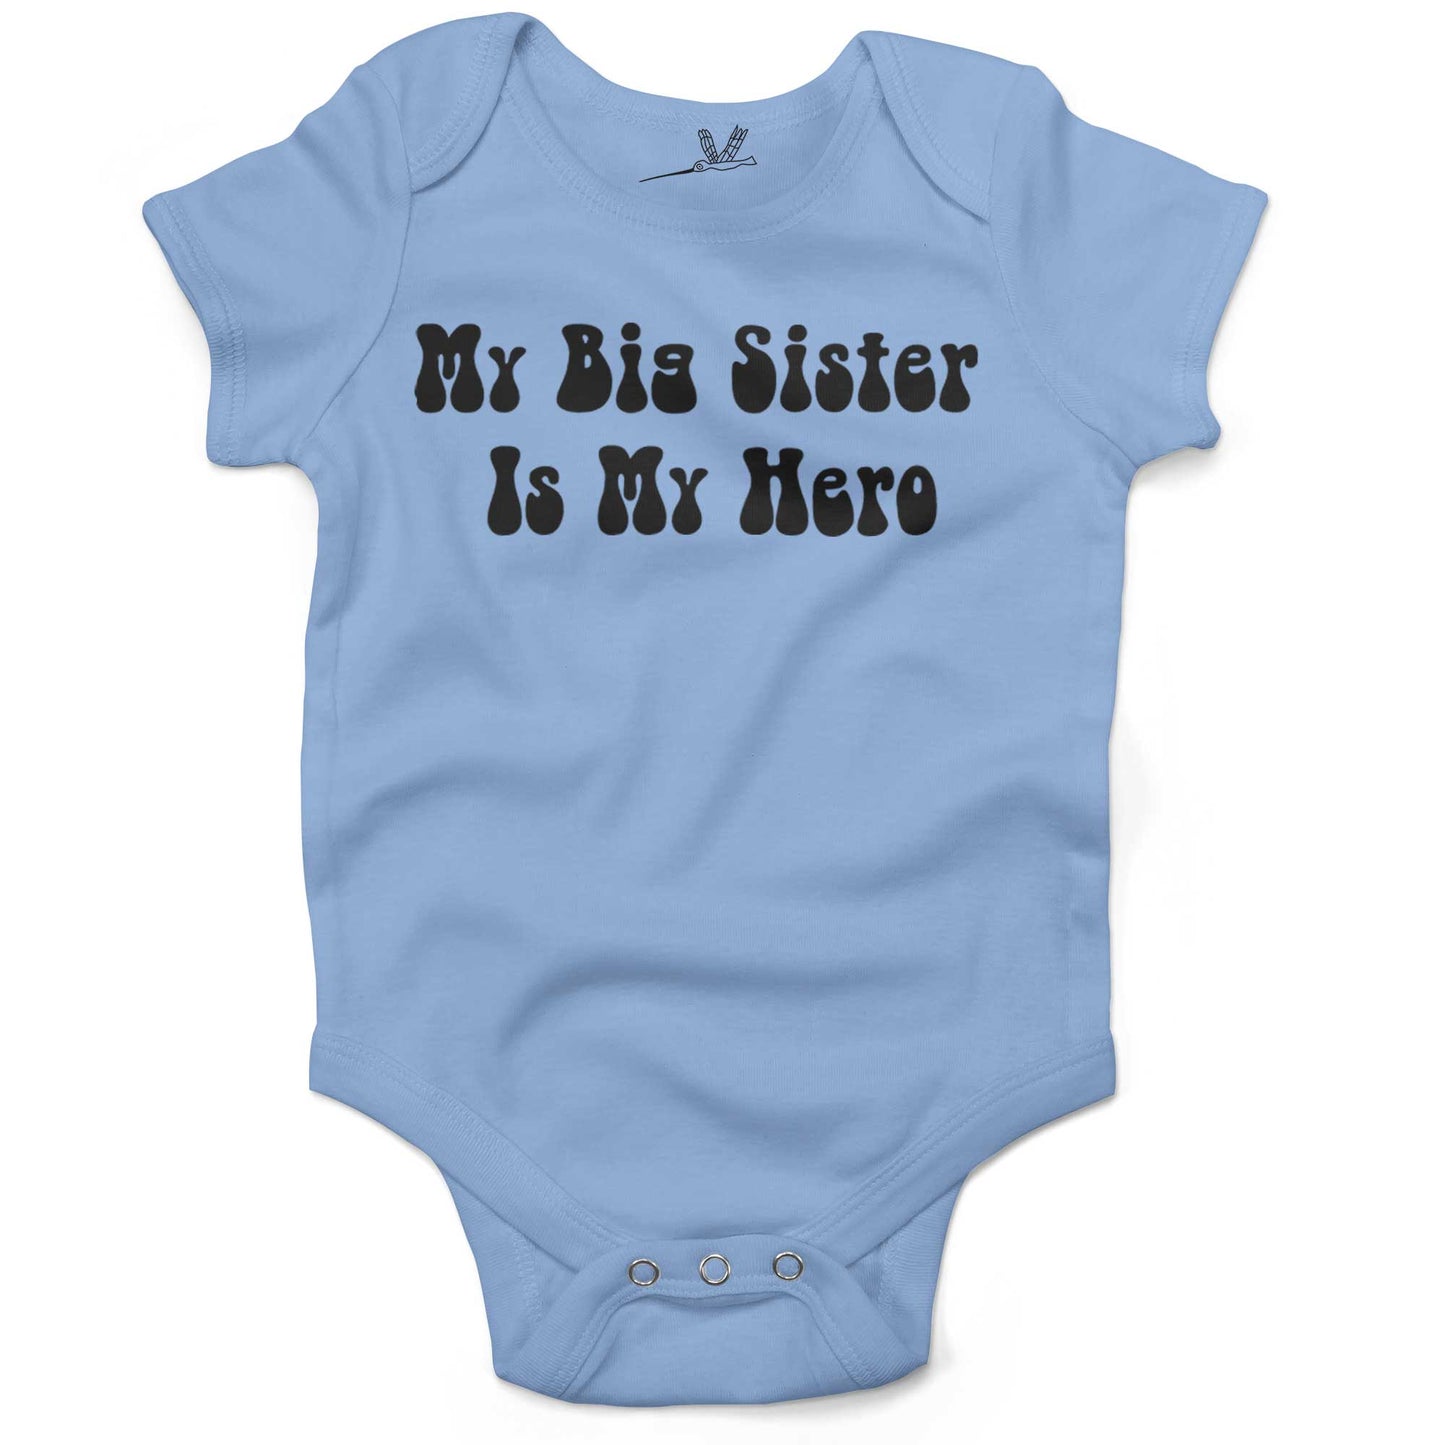 My Big Sister Is My Hero Infant Bodysuit or Raglan Tee-Organic Baby Blue-3-6 months